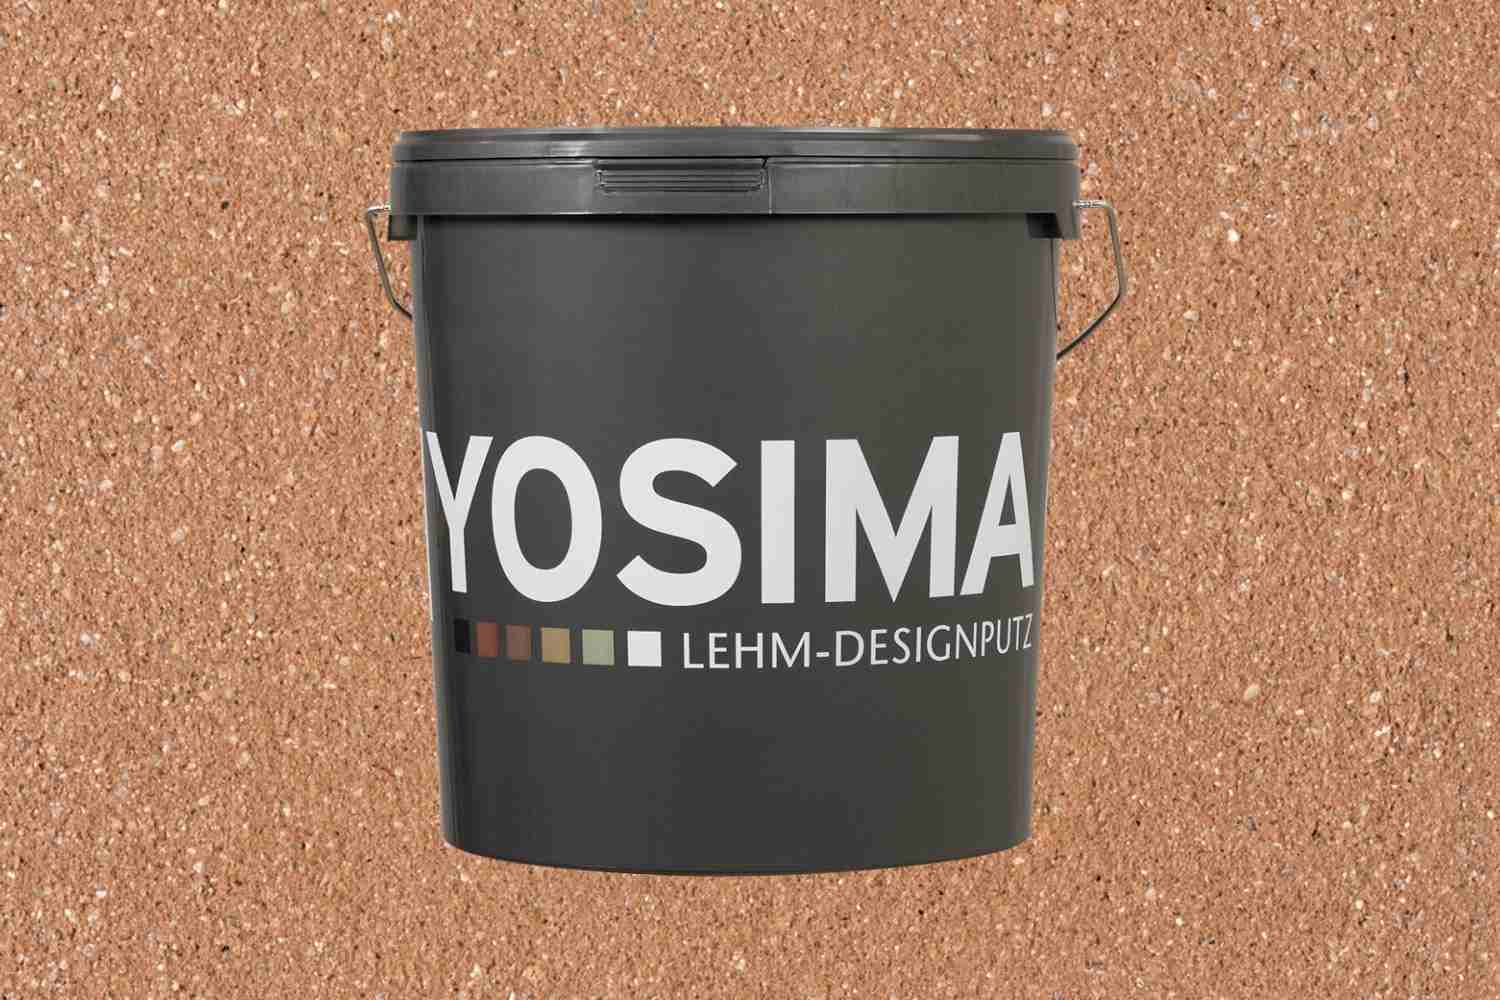 Claytec Yosima Lehm-Designputz